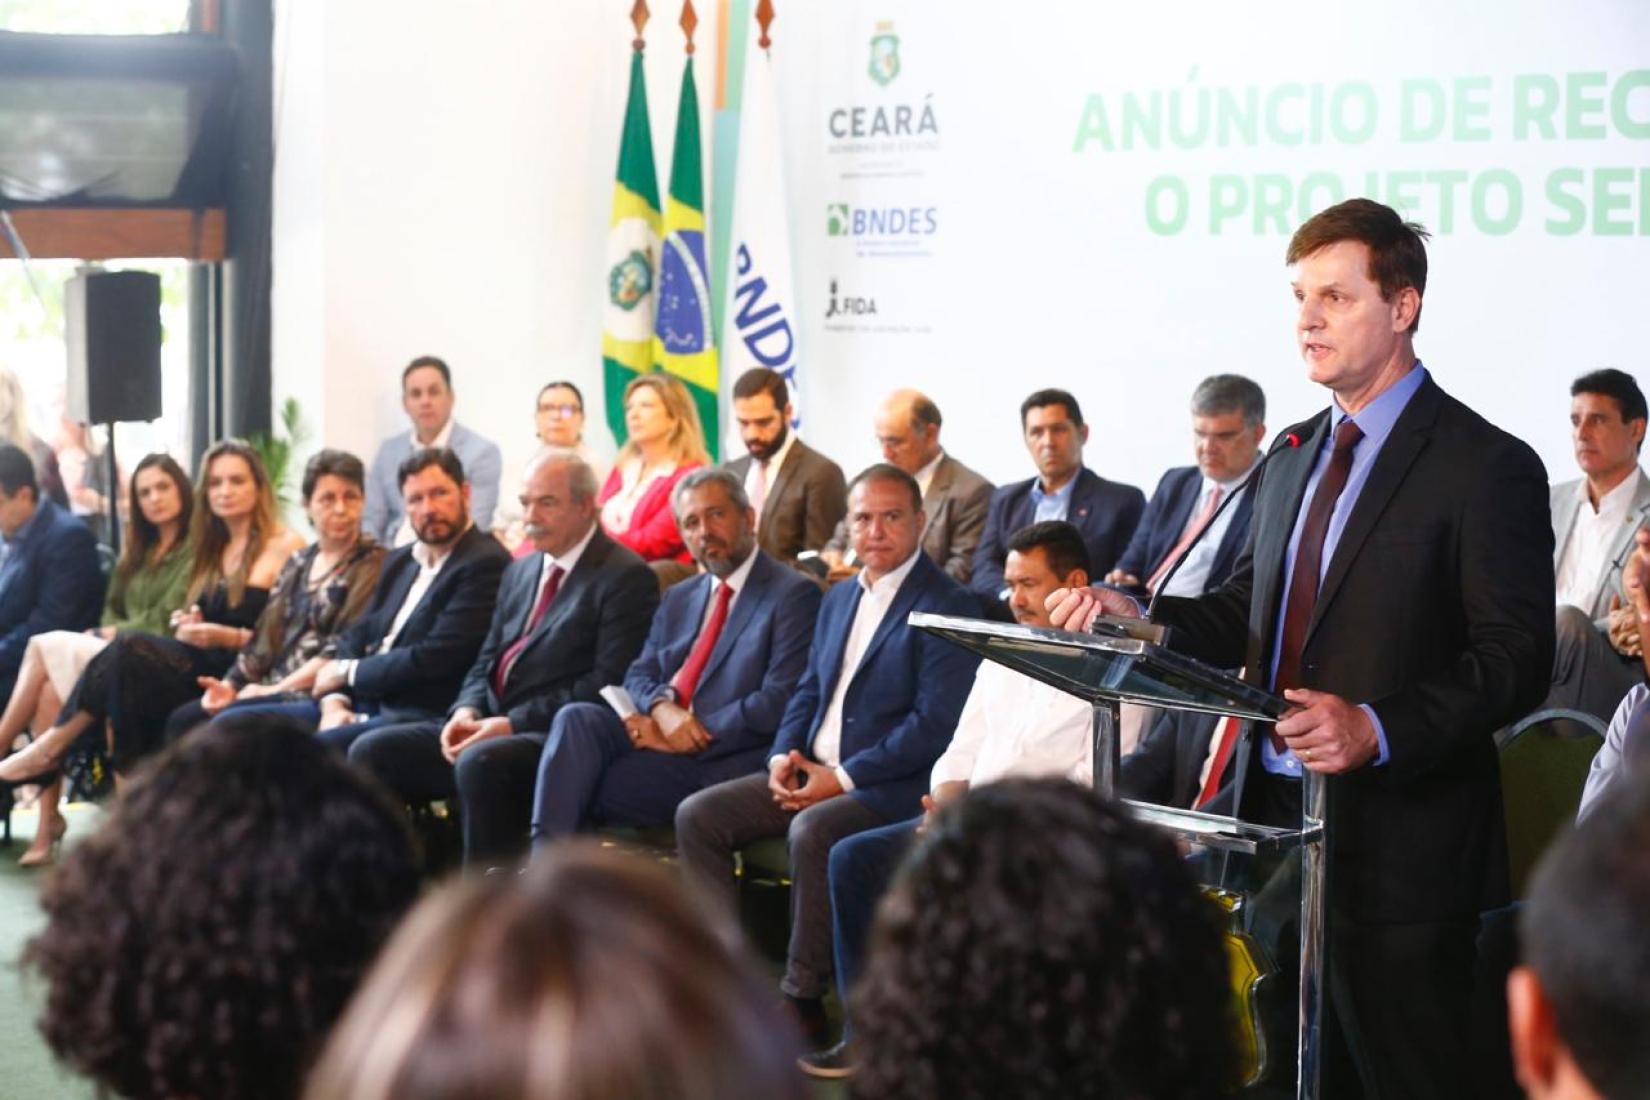 Lançamento do projeto Sertão Vivo, em Fortaleza. Até o momento, 13 projetos foram implementados com apoio do FIDA no Brasil, com um investimento total de US$ 1,18 bilhã